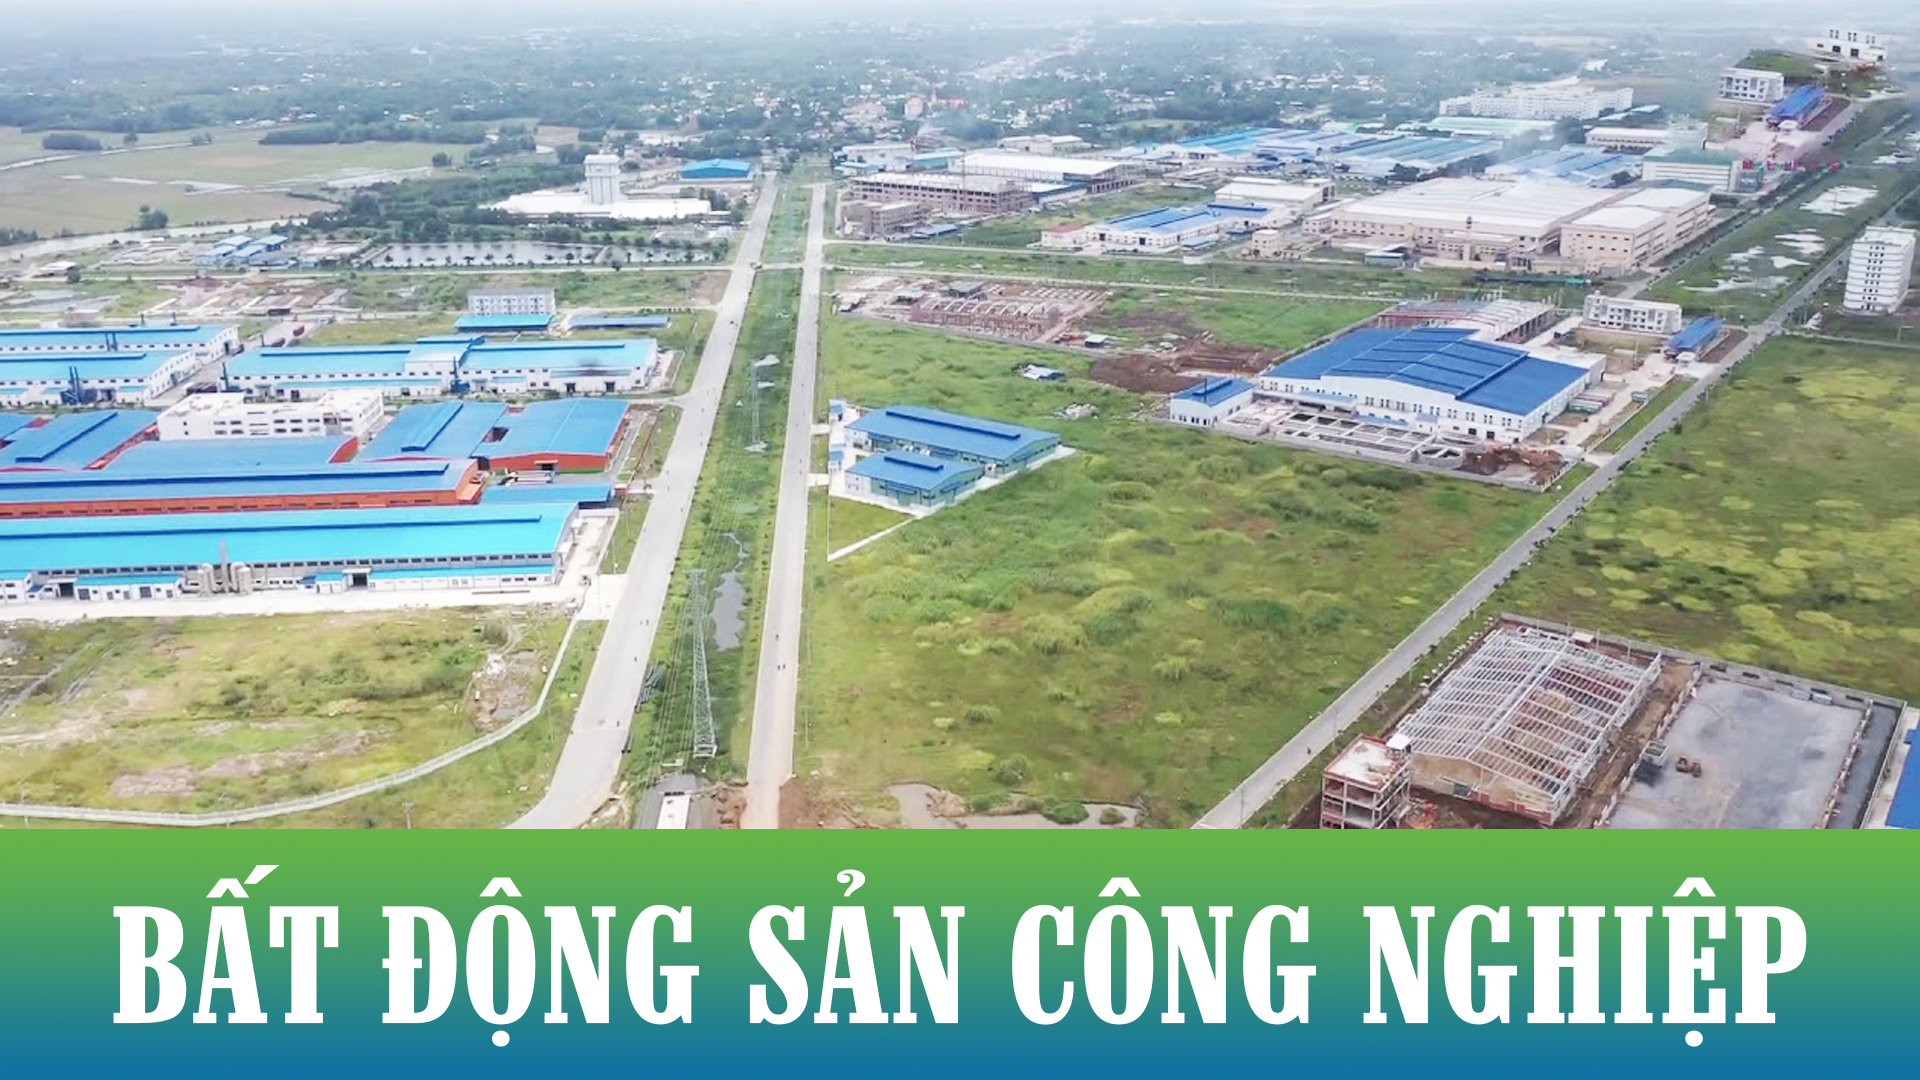 Xu hướng bất động sản công nghiệp hiện đang phát triển mạnh mẽ tại Tây Ninh